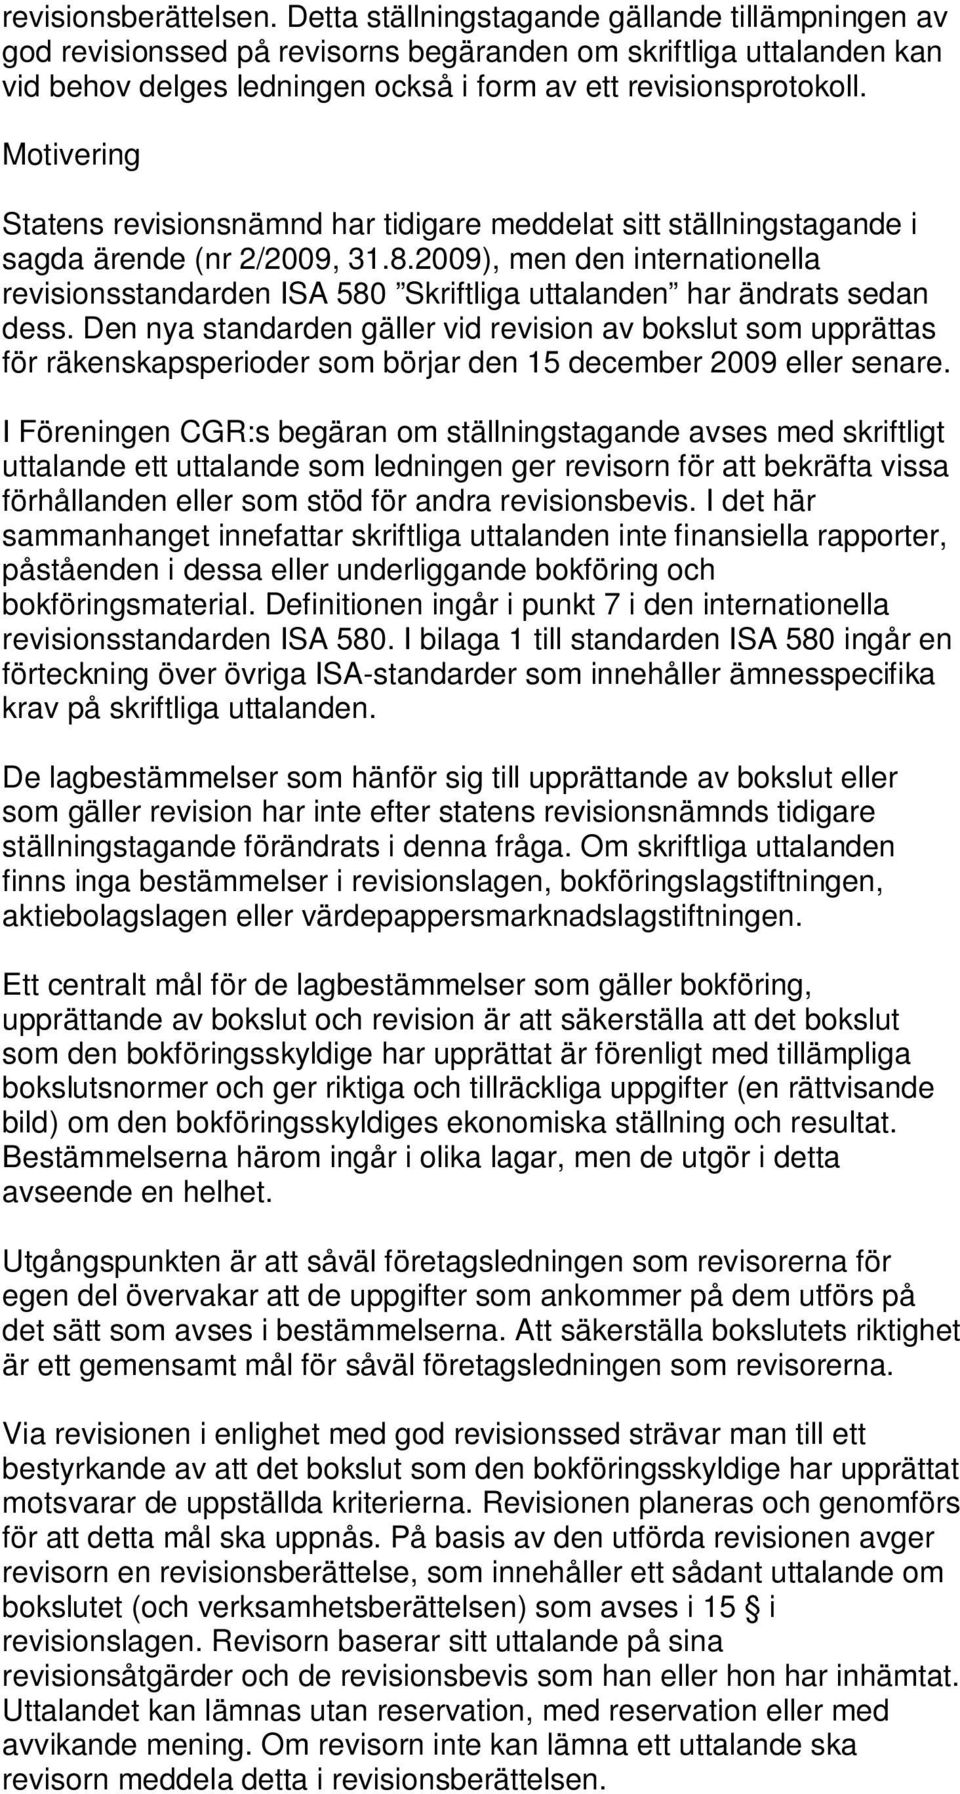 Motivering Statens revisionsnämnd har tidigare meddelat sitt ställningstagande i sagda ärende (nr 2/2009, 31.8.